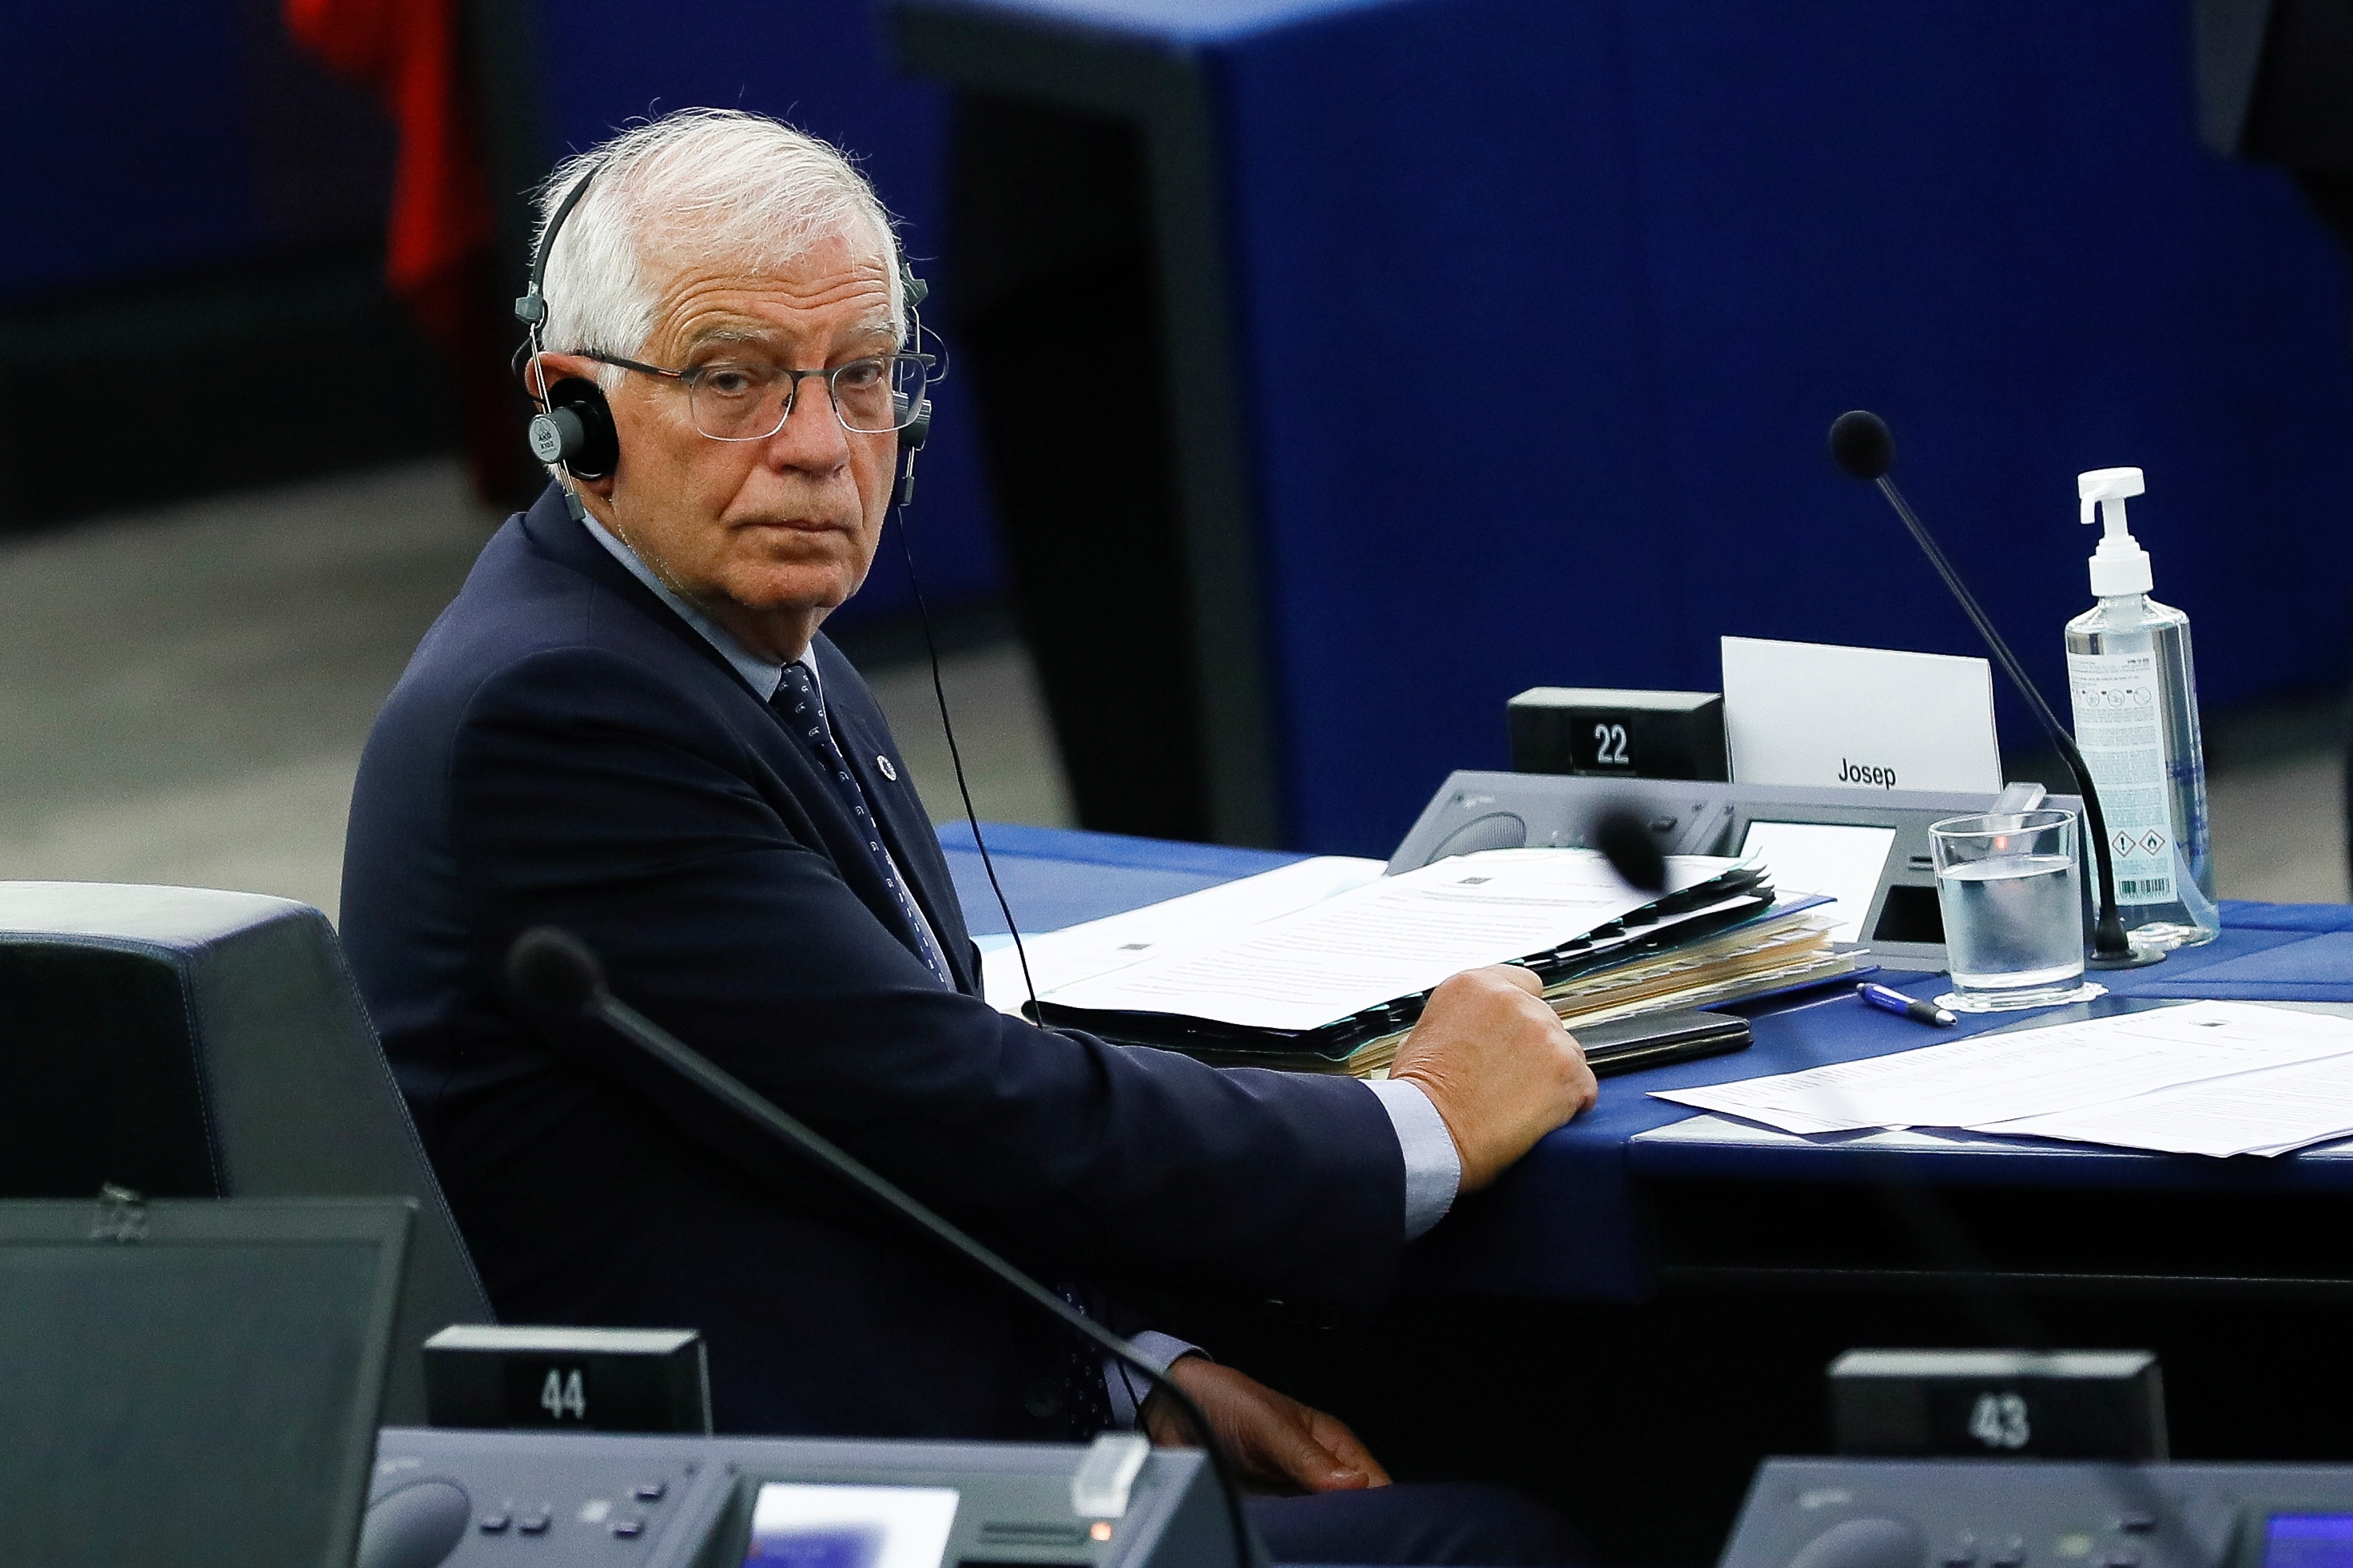 El Alto Representante de la UE para Asuntos Exteriores, Josep Borrell.